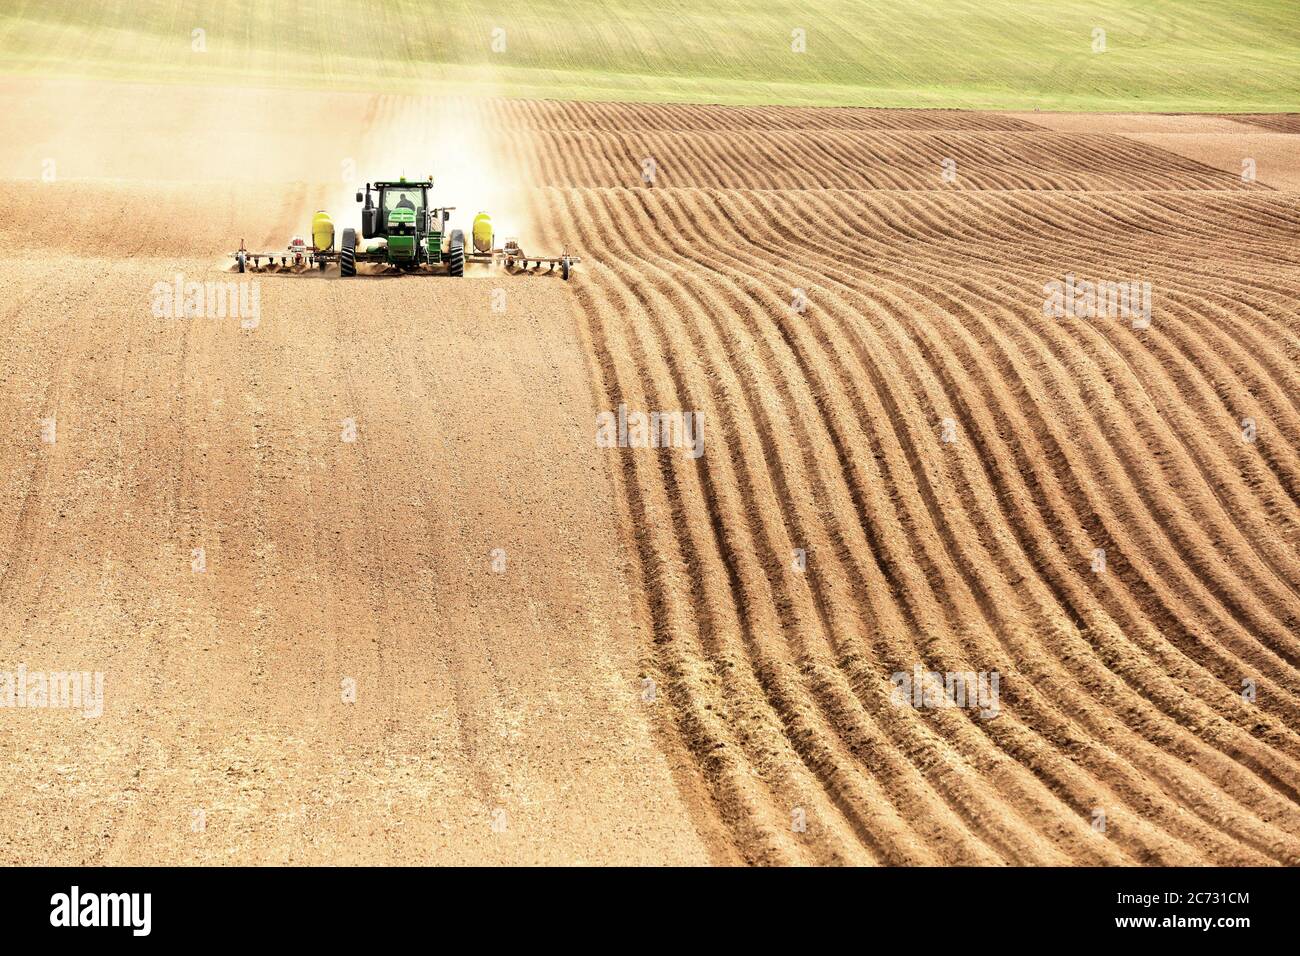 Un tracteur dans un champ de ferme, tirant un outil de labour et de culture, pour labourer et aérer le sol en préparation pour la plantation de pommes de terre de l'Idaho. Banque D'Images